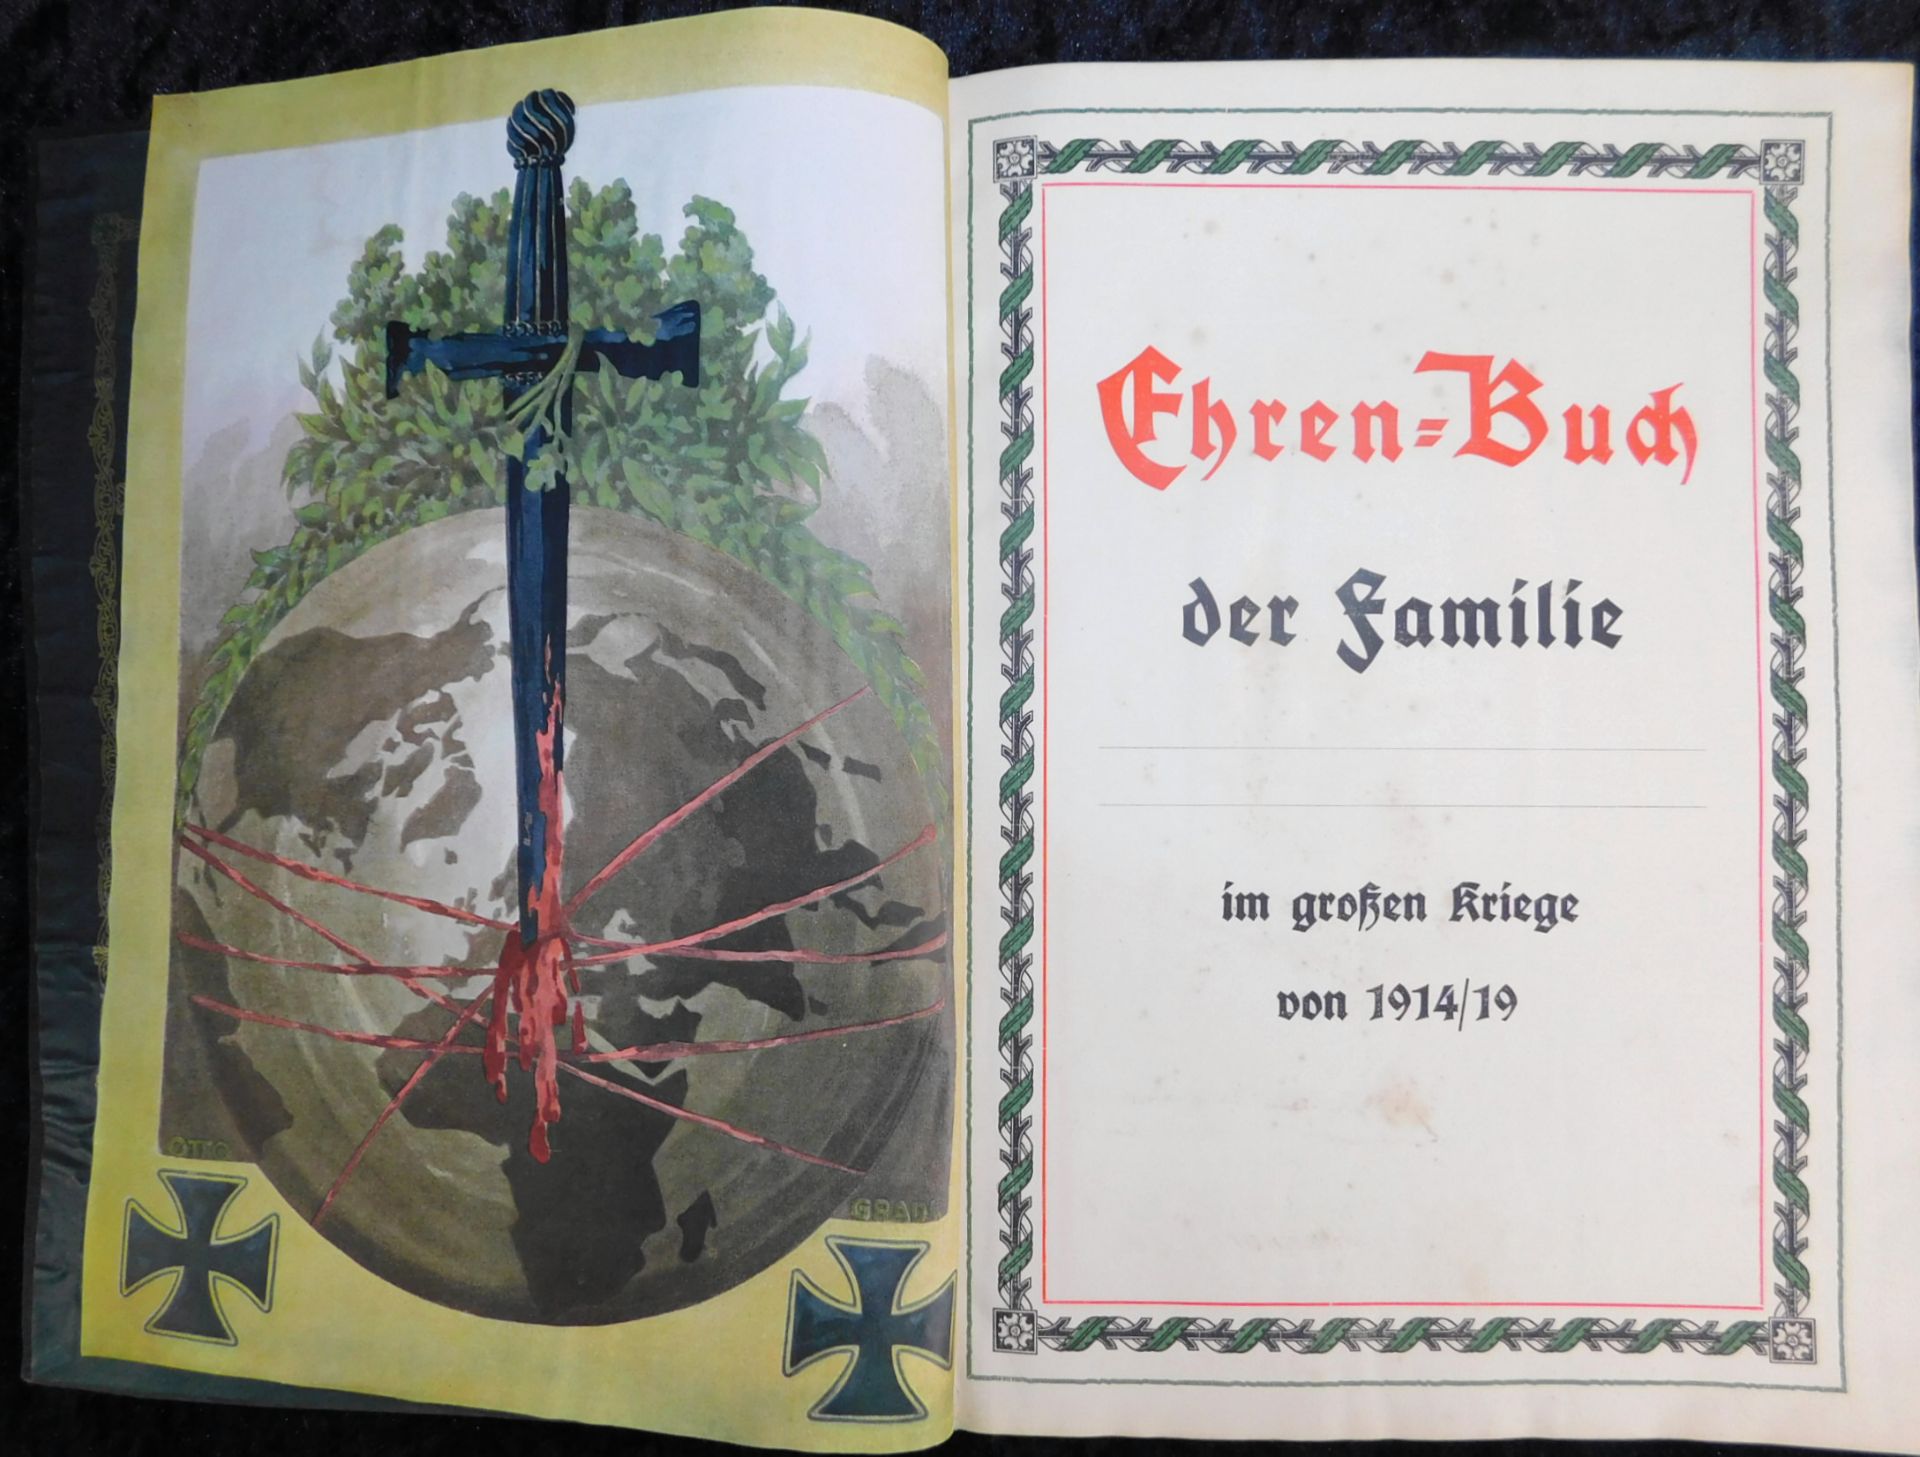 Großes Ehrenbuch 1914, Familienstammbuch, Verlag Joh.E.Hubens, Diessen/München - Image 4 of 7